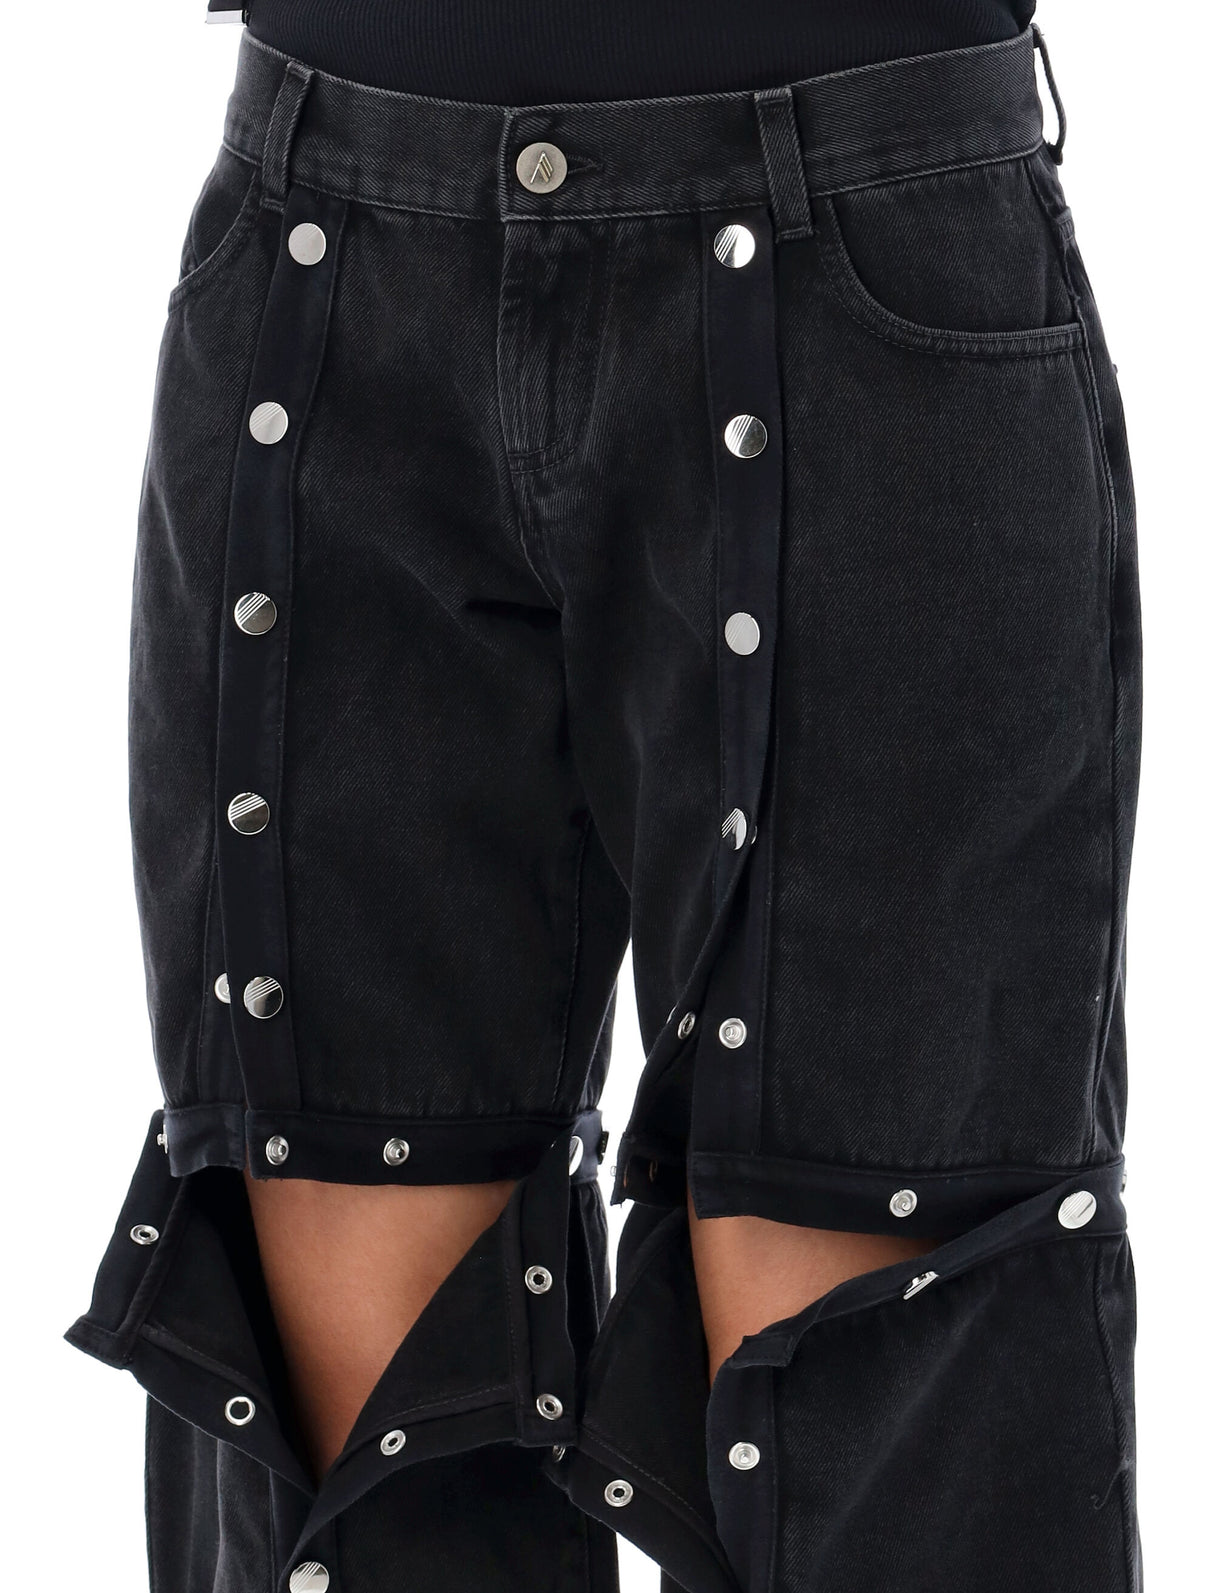 Quần jeans đen thấp Eo của Nữ bộ sưu tập SS24 của The Attico